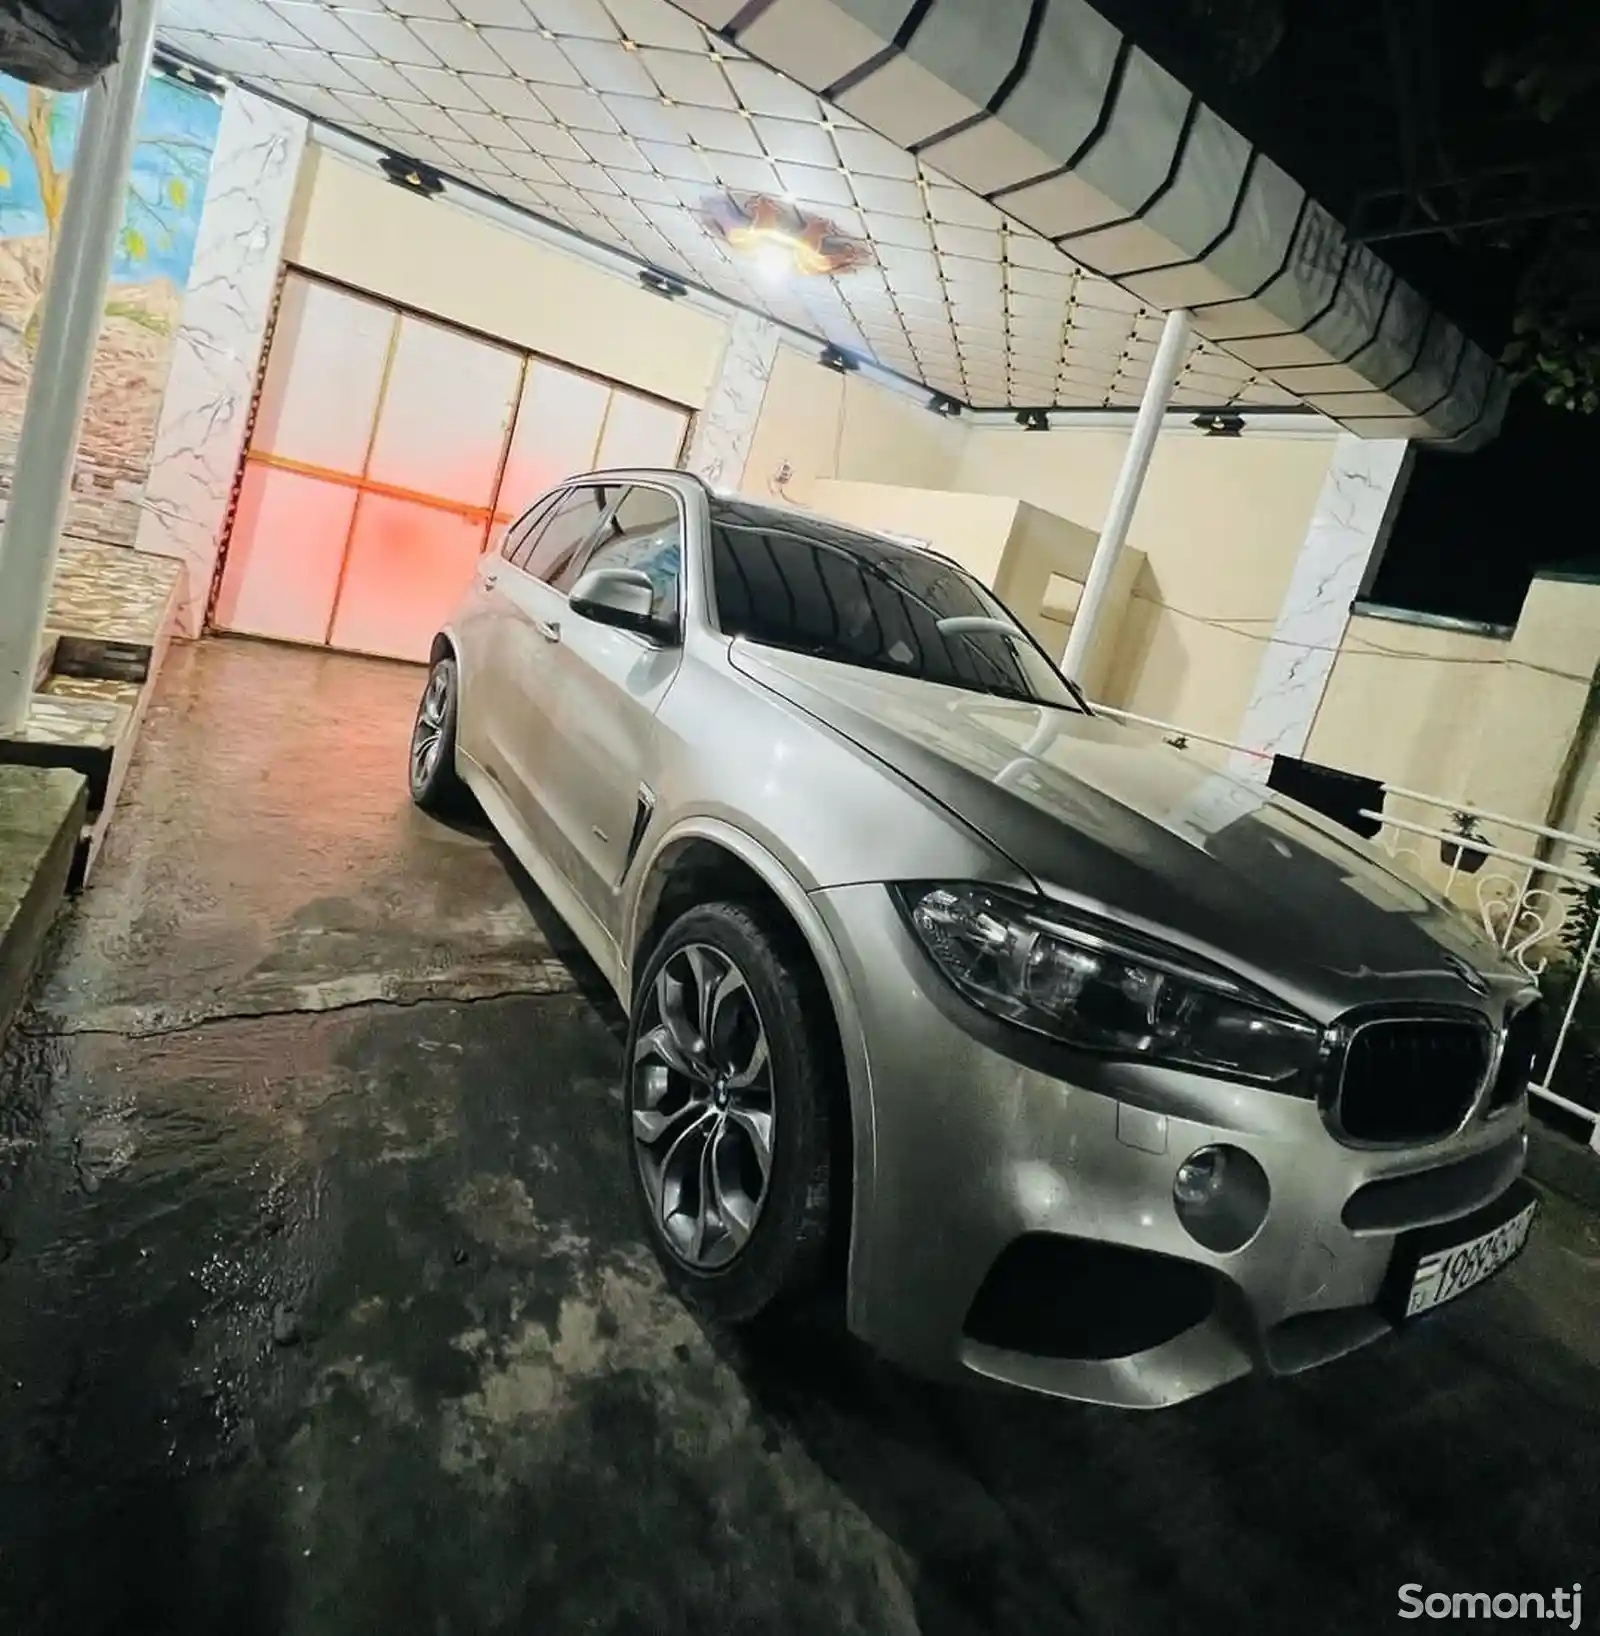 BMW X5, 2016-2